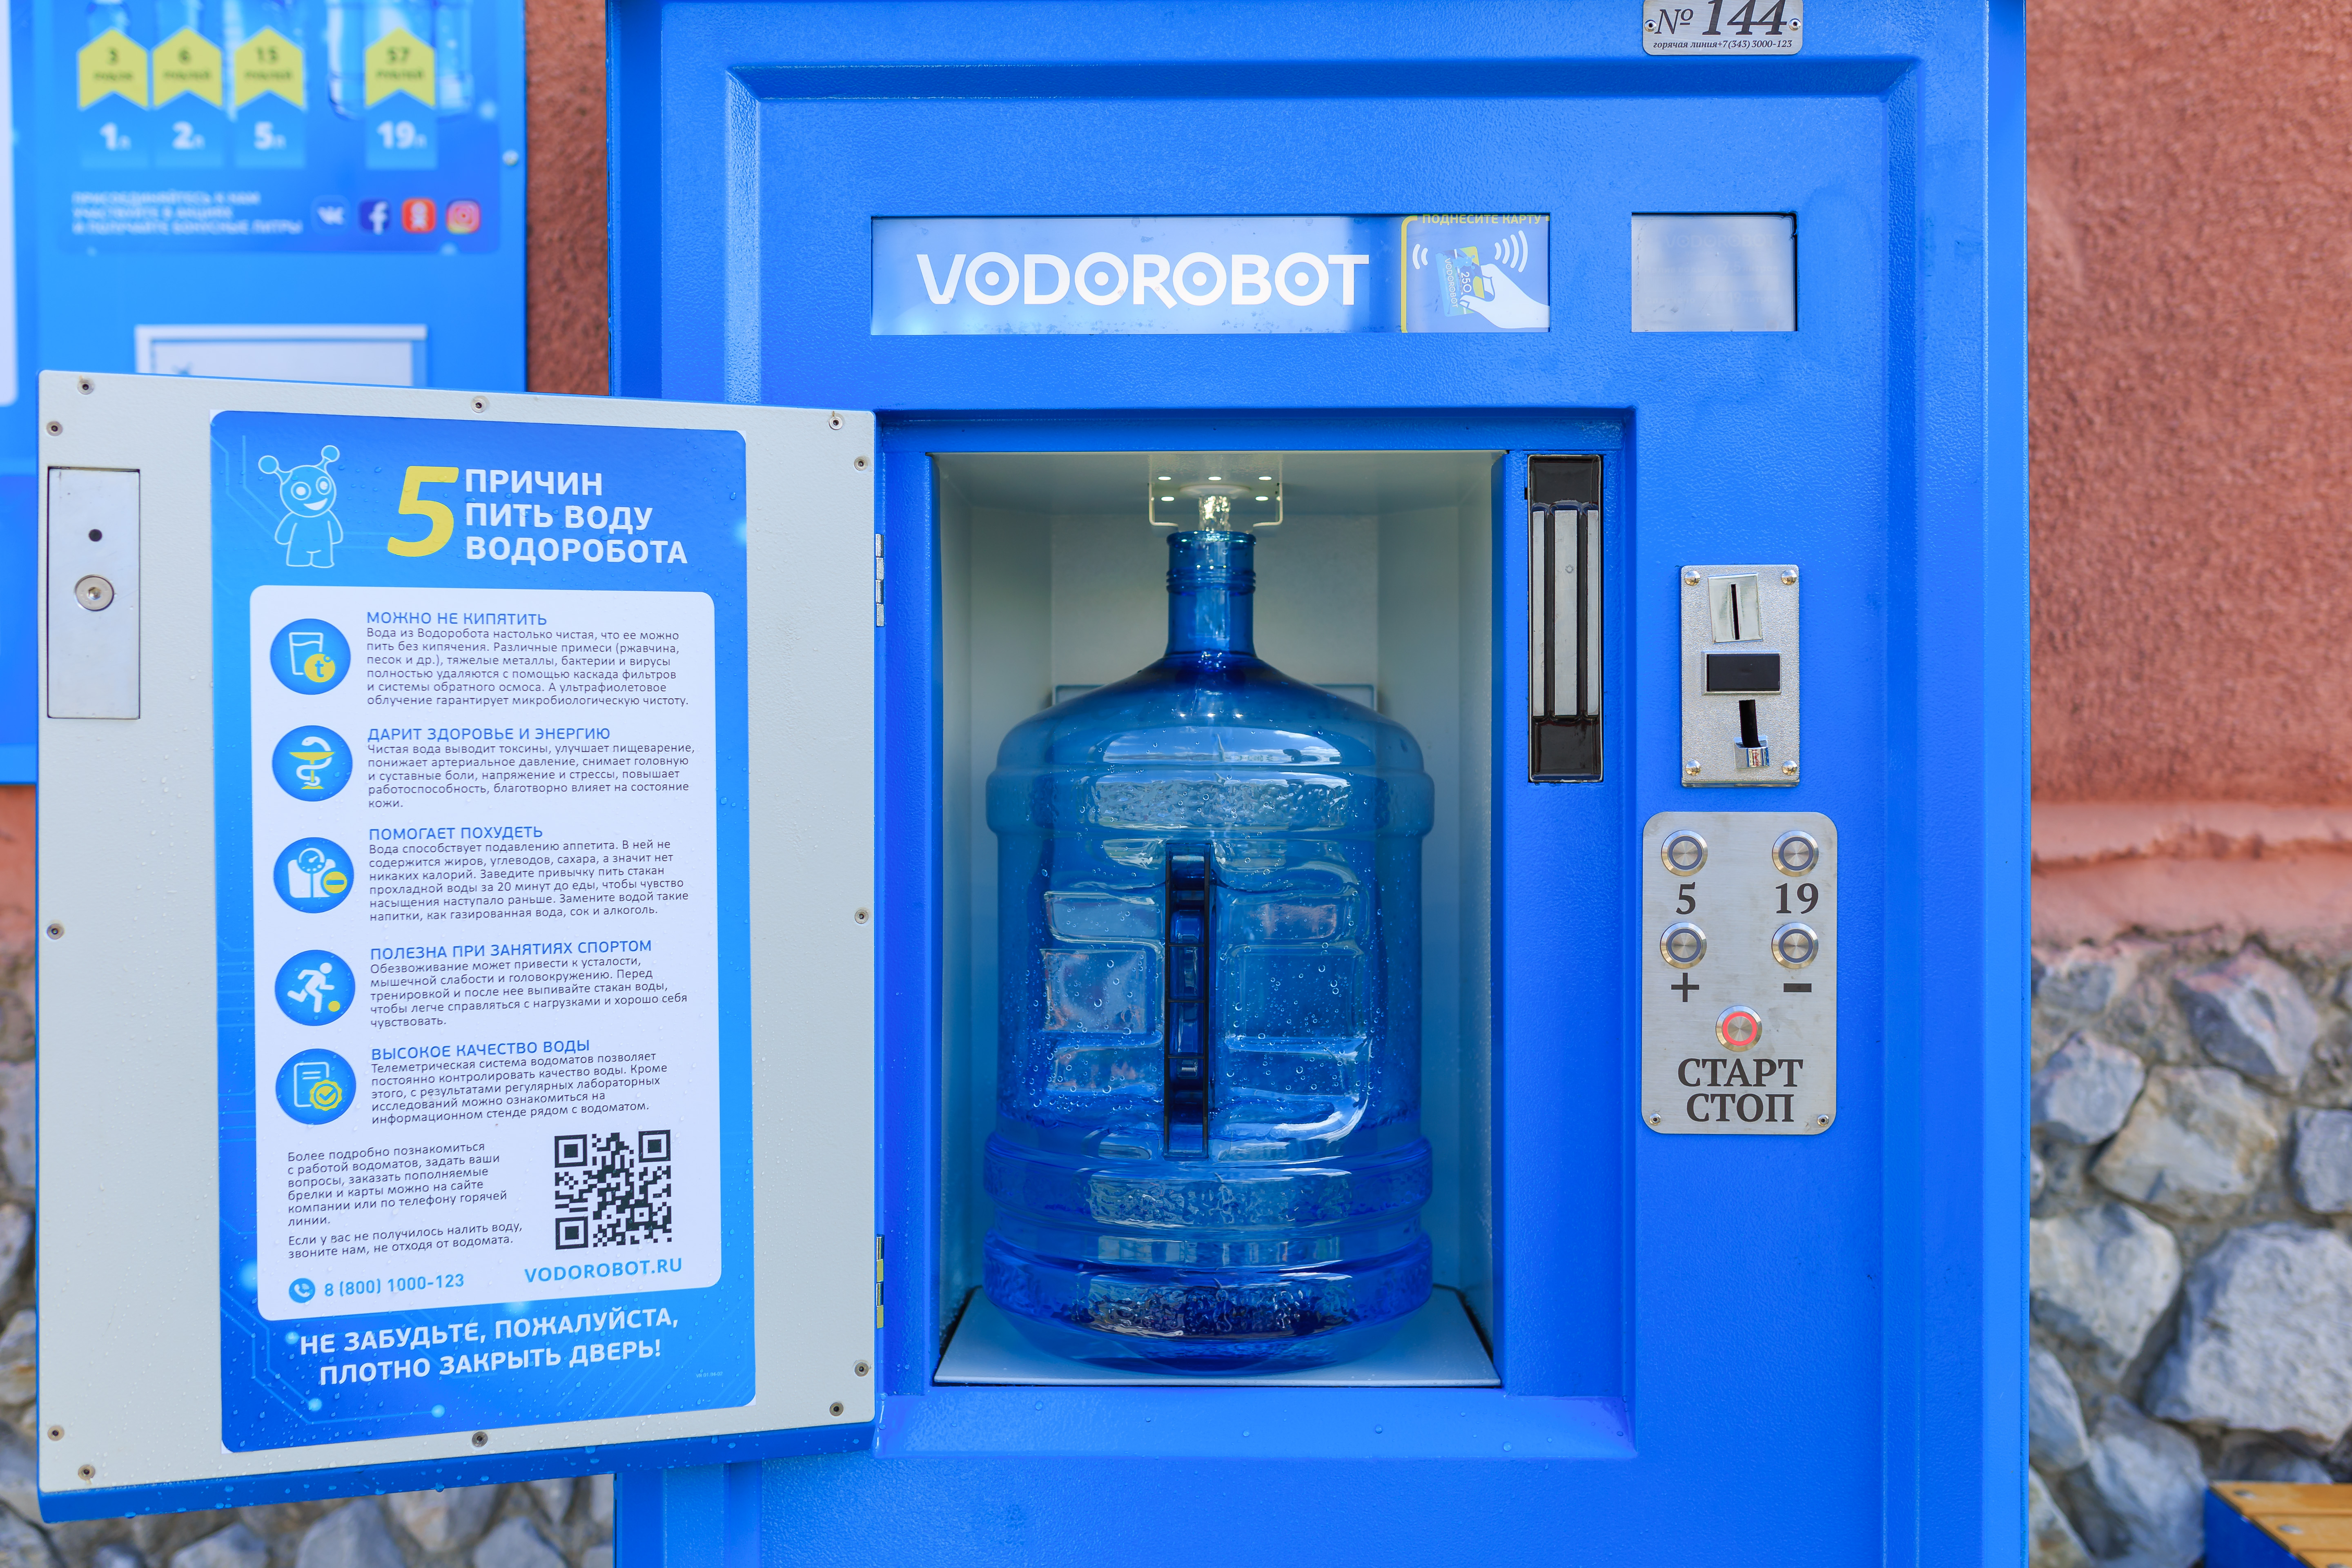 Аппарат продажи воды на улице. Автомат питьевой воды. Автомат с бутилированной водой. Водоробот автомат. Аппарат для питьевой воды на улице.